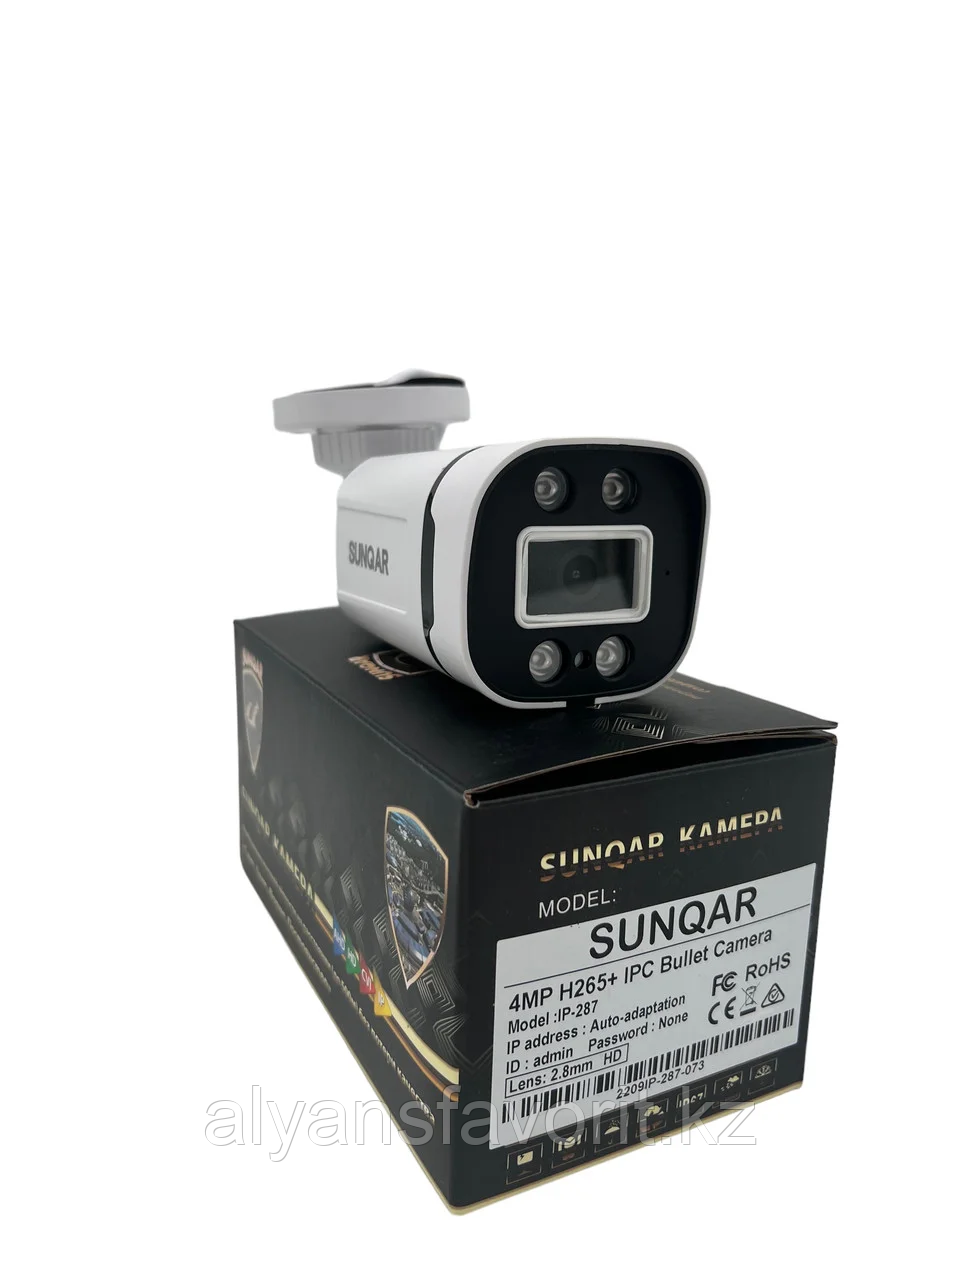 Камера видеонаблюдения SUNQAR IP-287 4MP H265+ IPC Bullet Camera